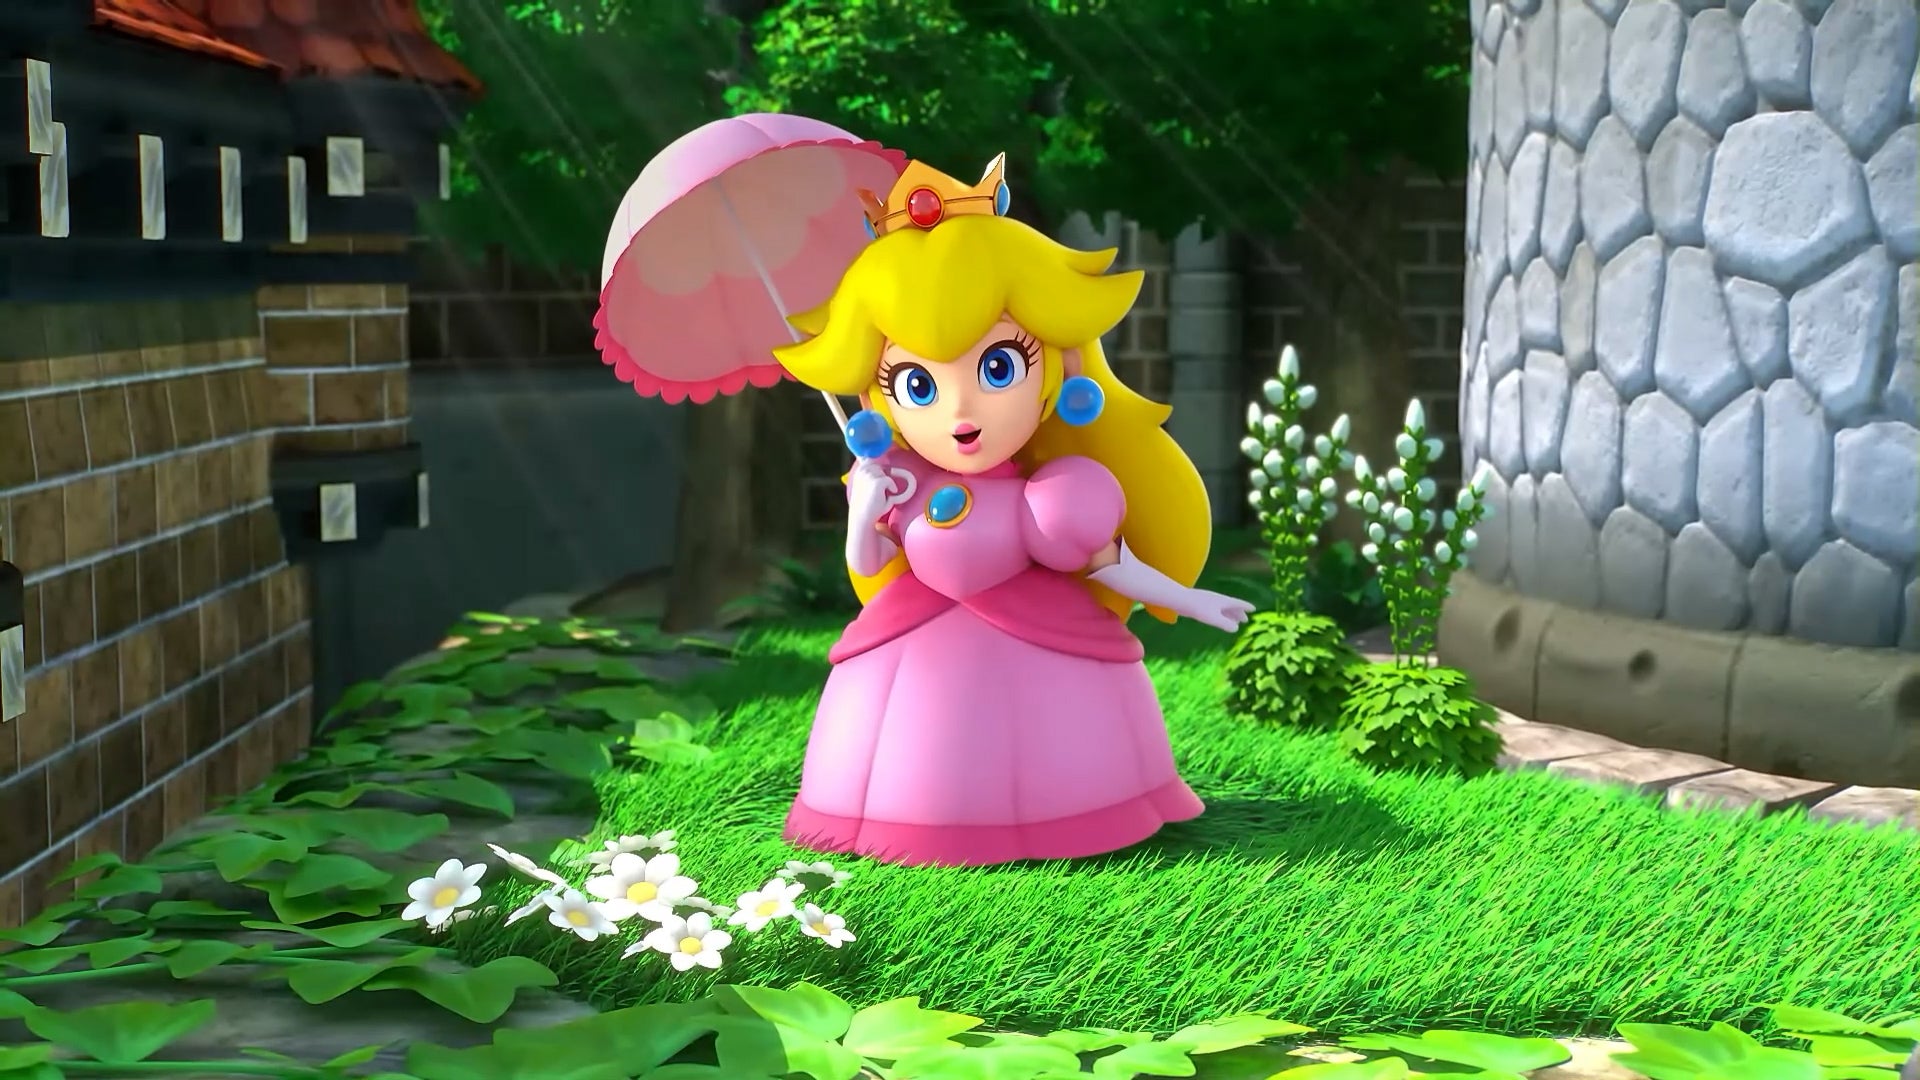 Nintendo opublikowało kilka zrzutów ekranu z Super Mario RPG Remake z lokacjami, bitwami i nie tylko